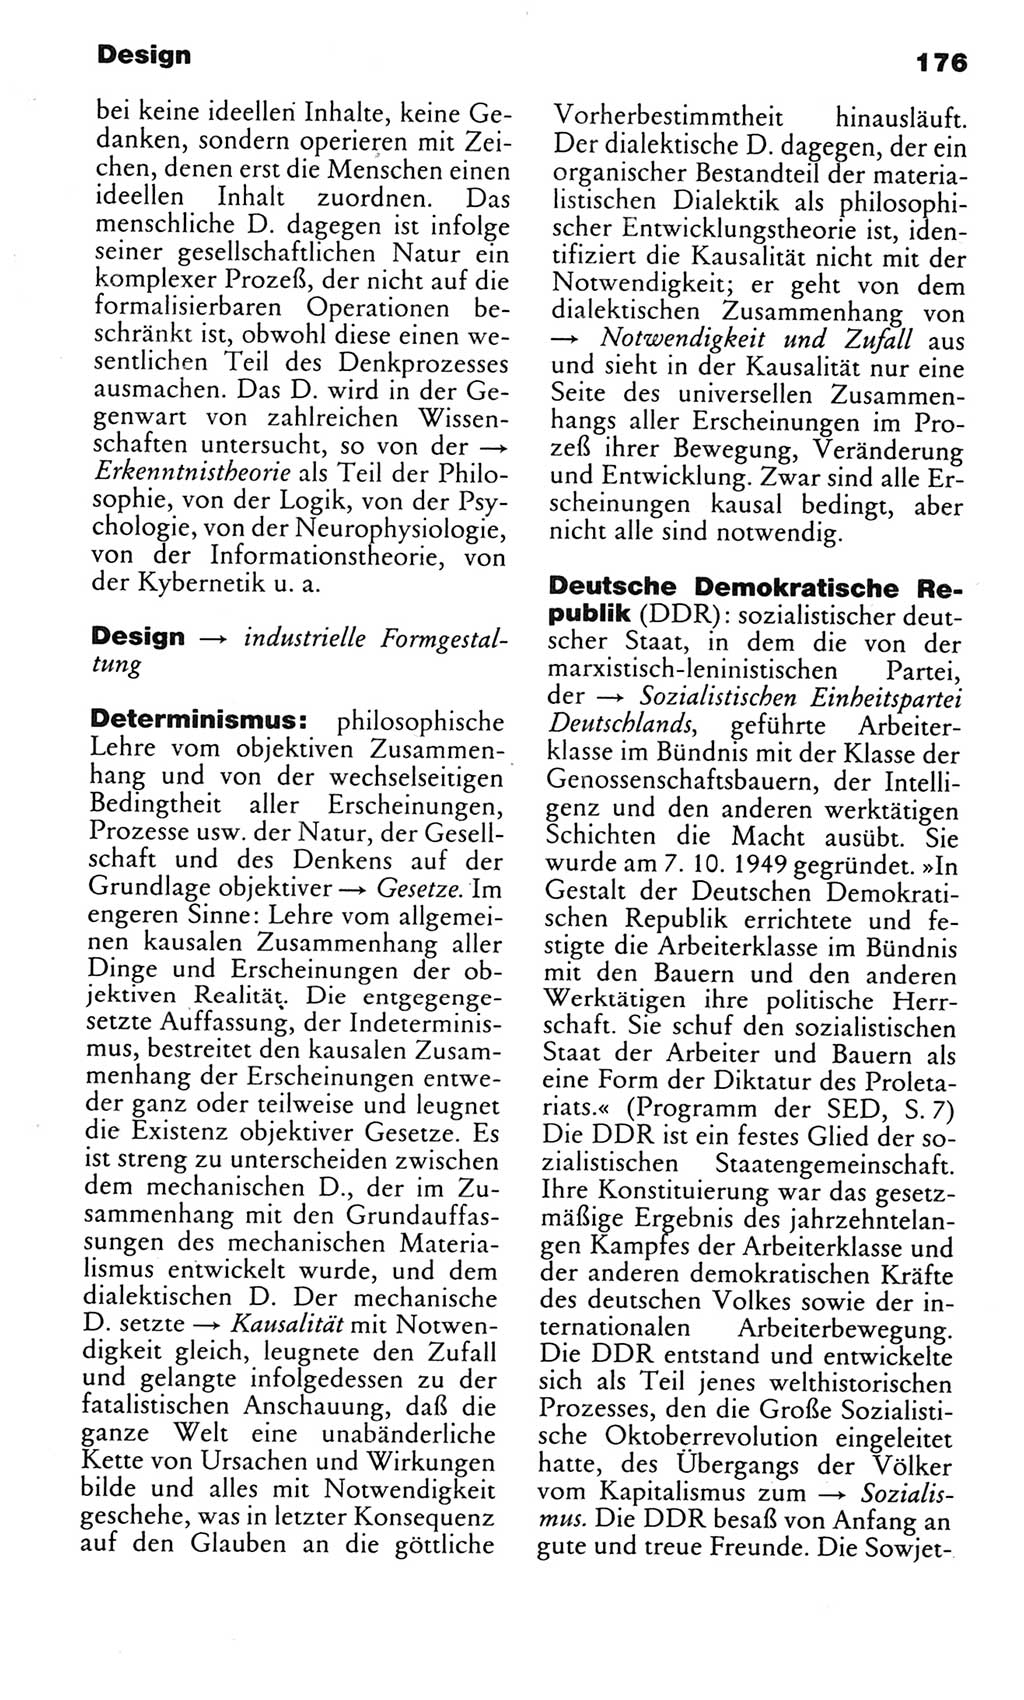 Kleines politisches Wörterbuch [Deutsche Demokratische Republik (DDR)] 1983, Seite 176 (Kl. pol. Wb. DDR 1983, S. 176)